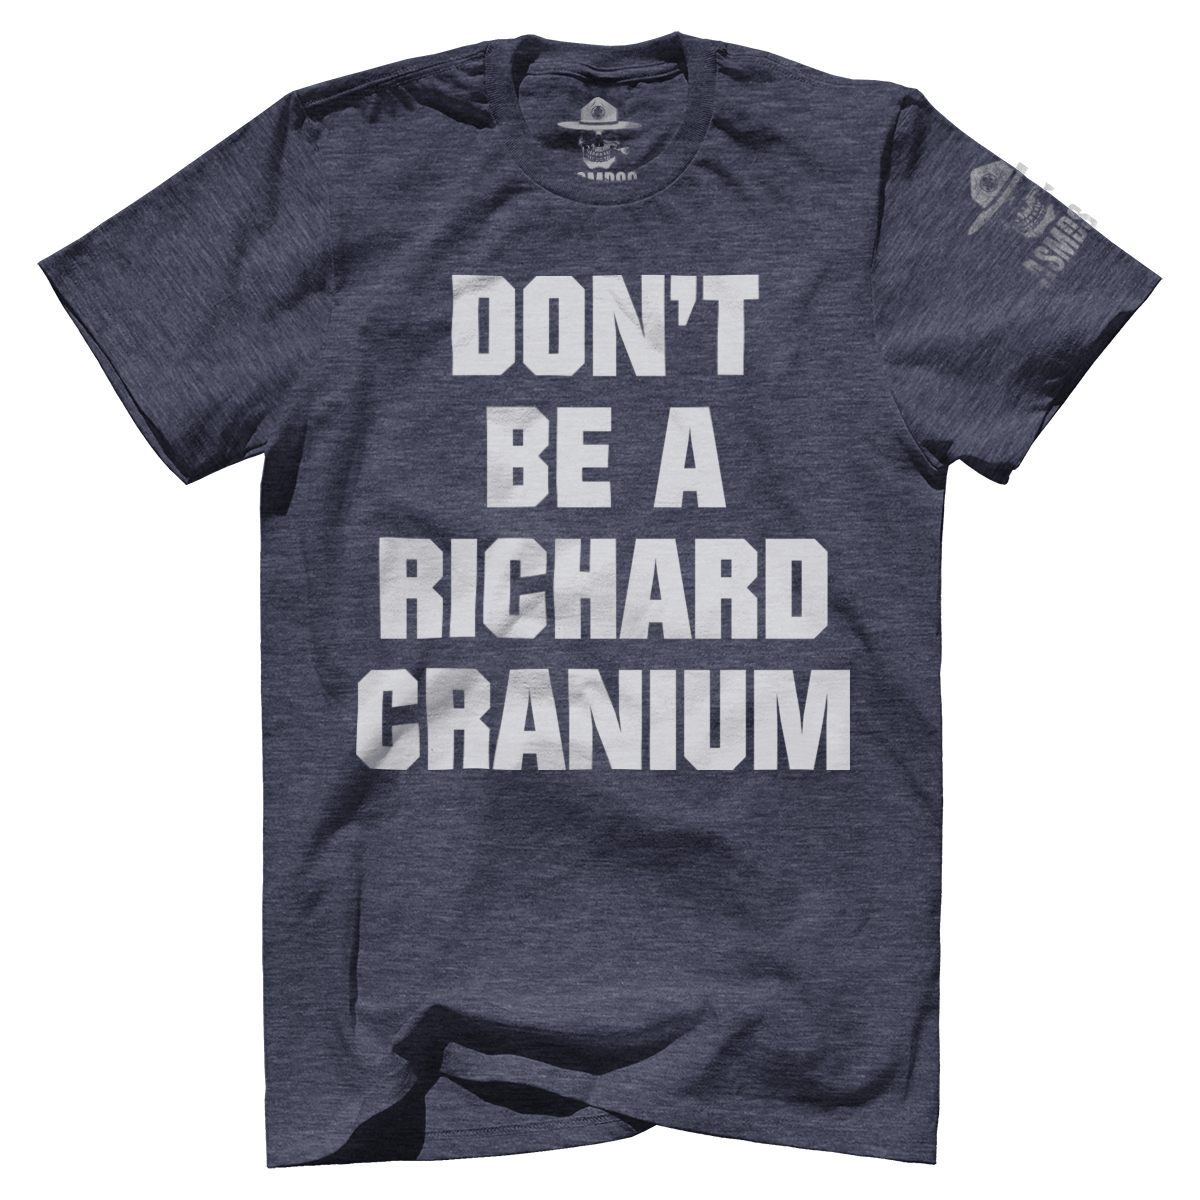 Richard Cranium